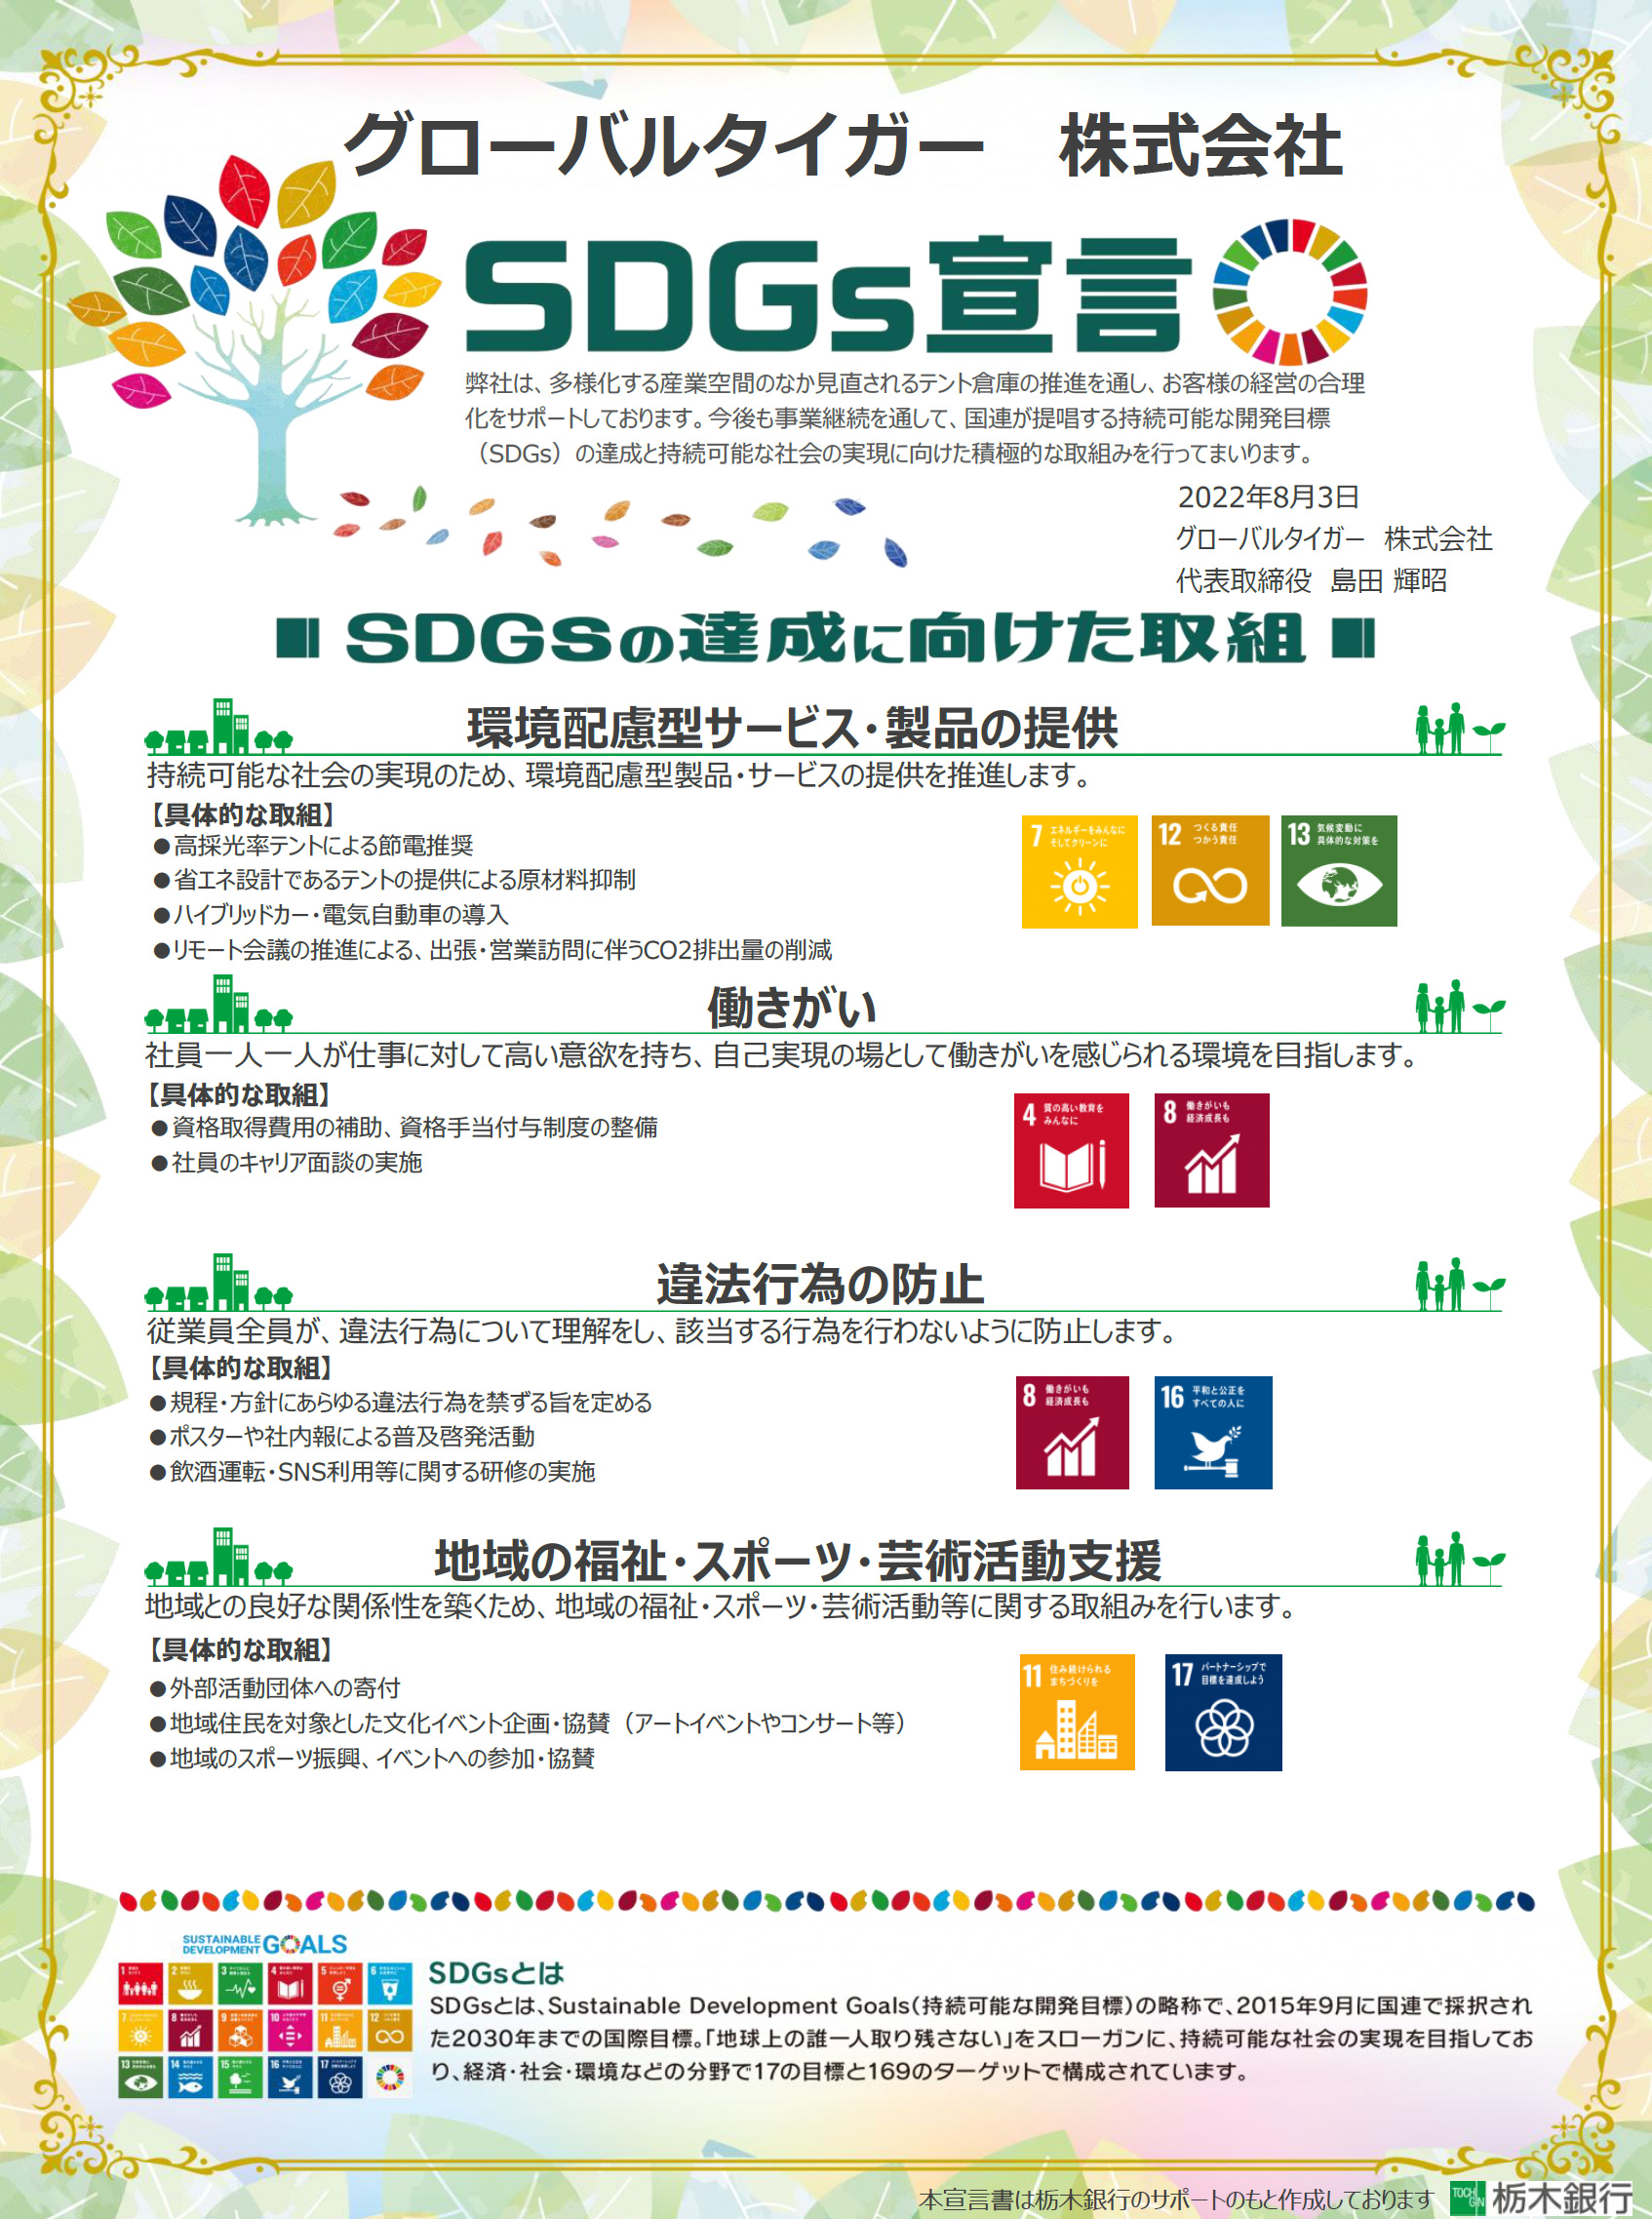 グローバルタイガー株式会社SDGs宣言